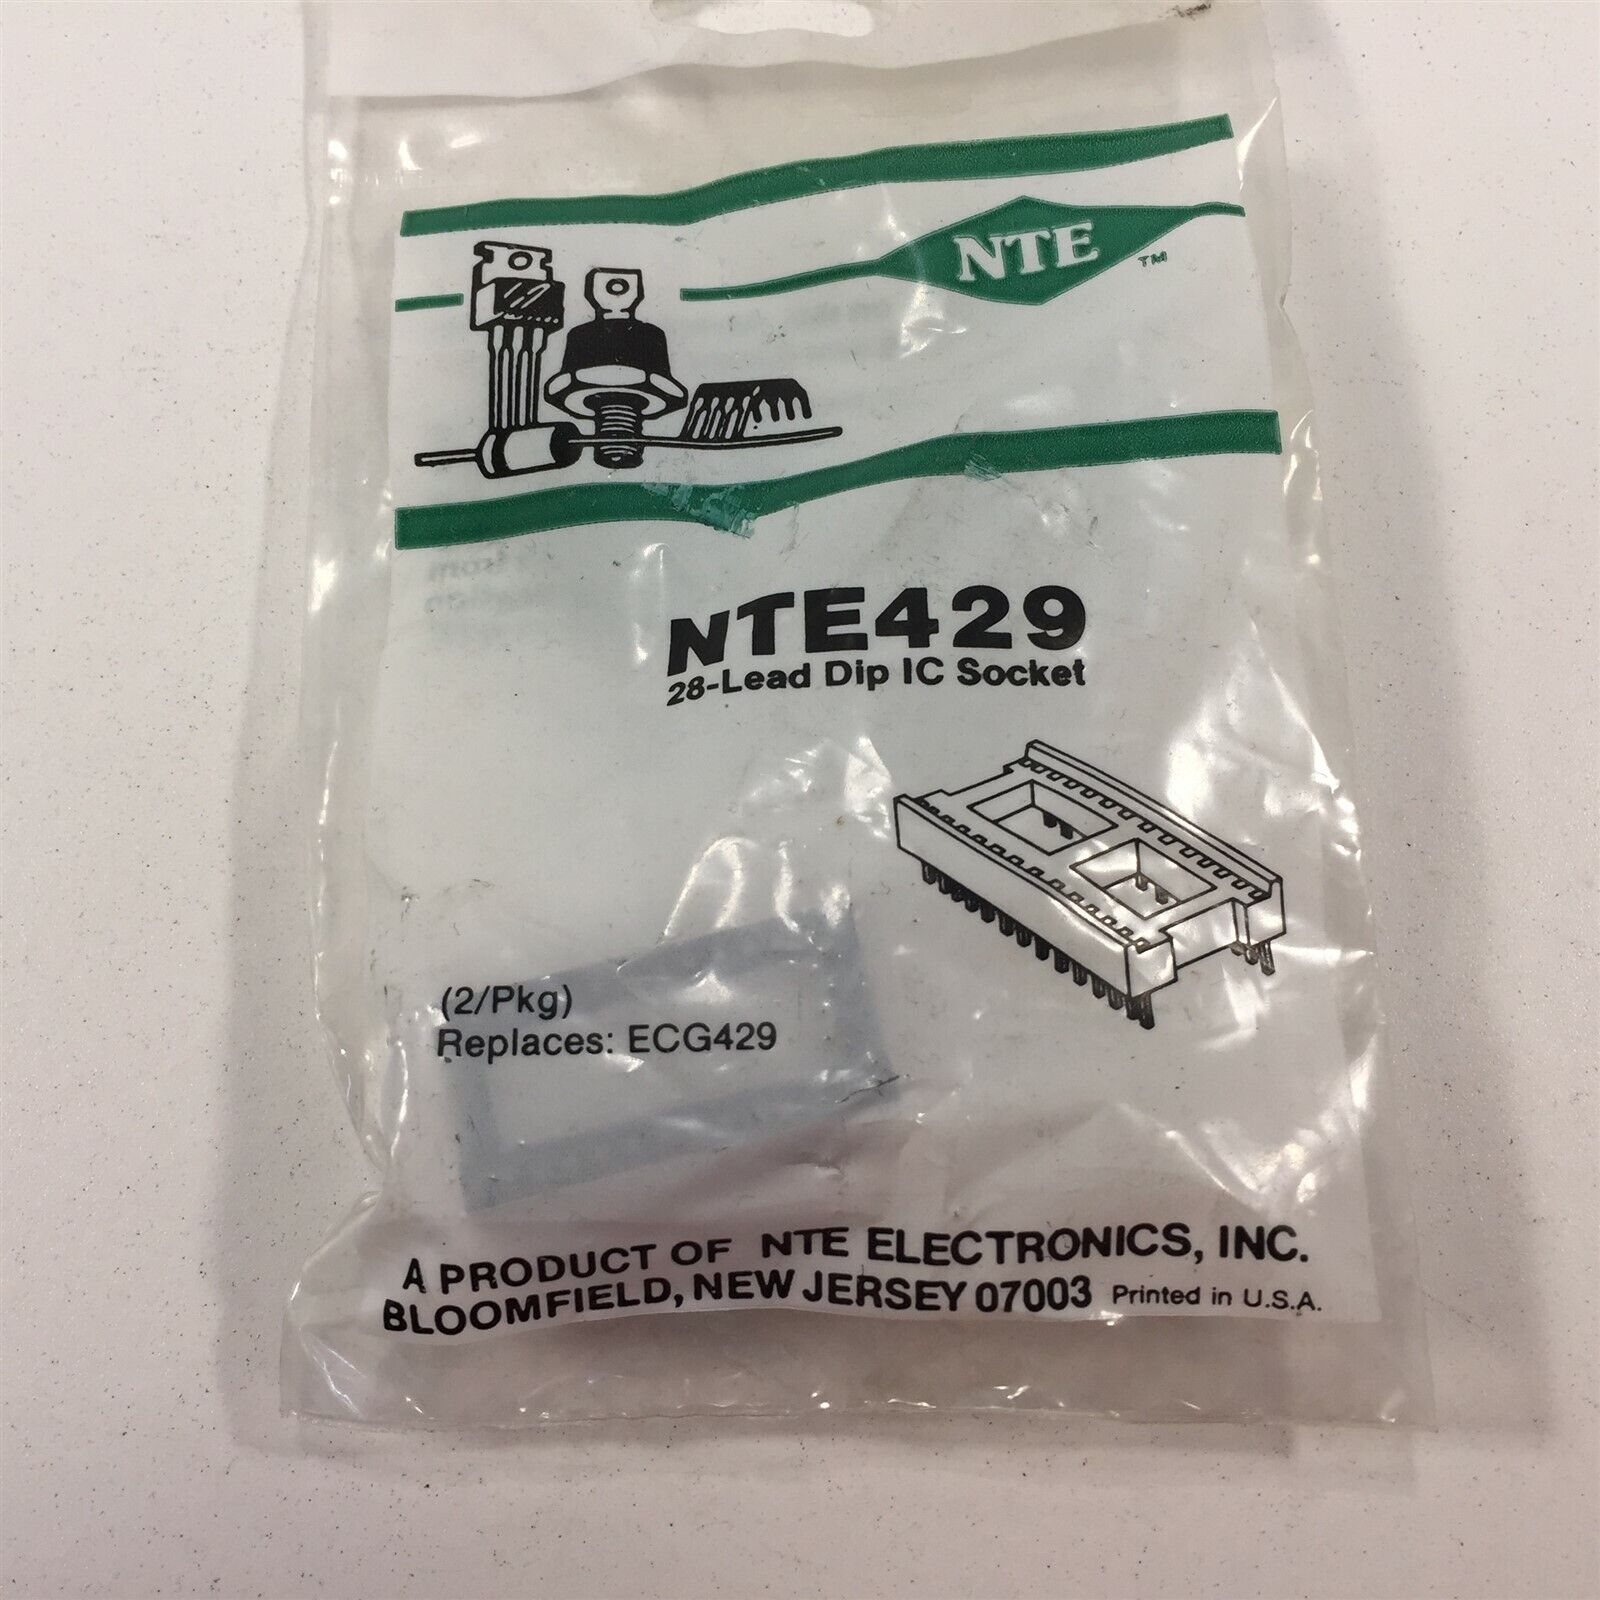 (2) NTE429 Socket for 28 Lead DIP Type Package - Lot of 2